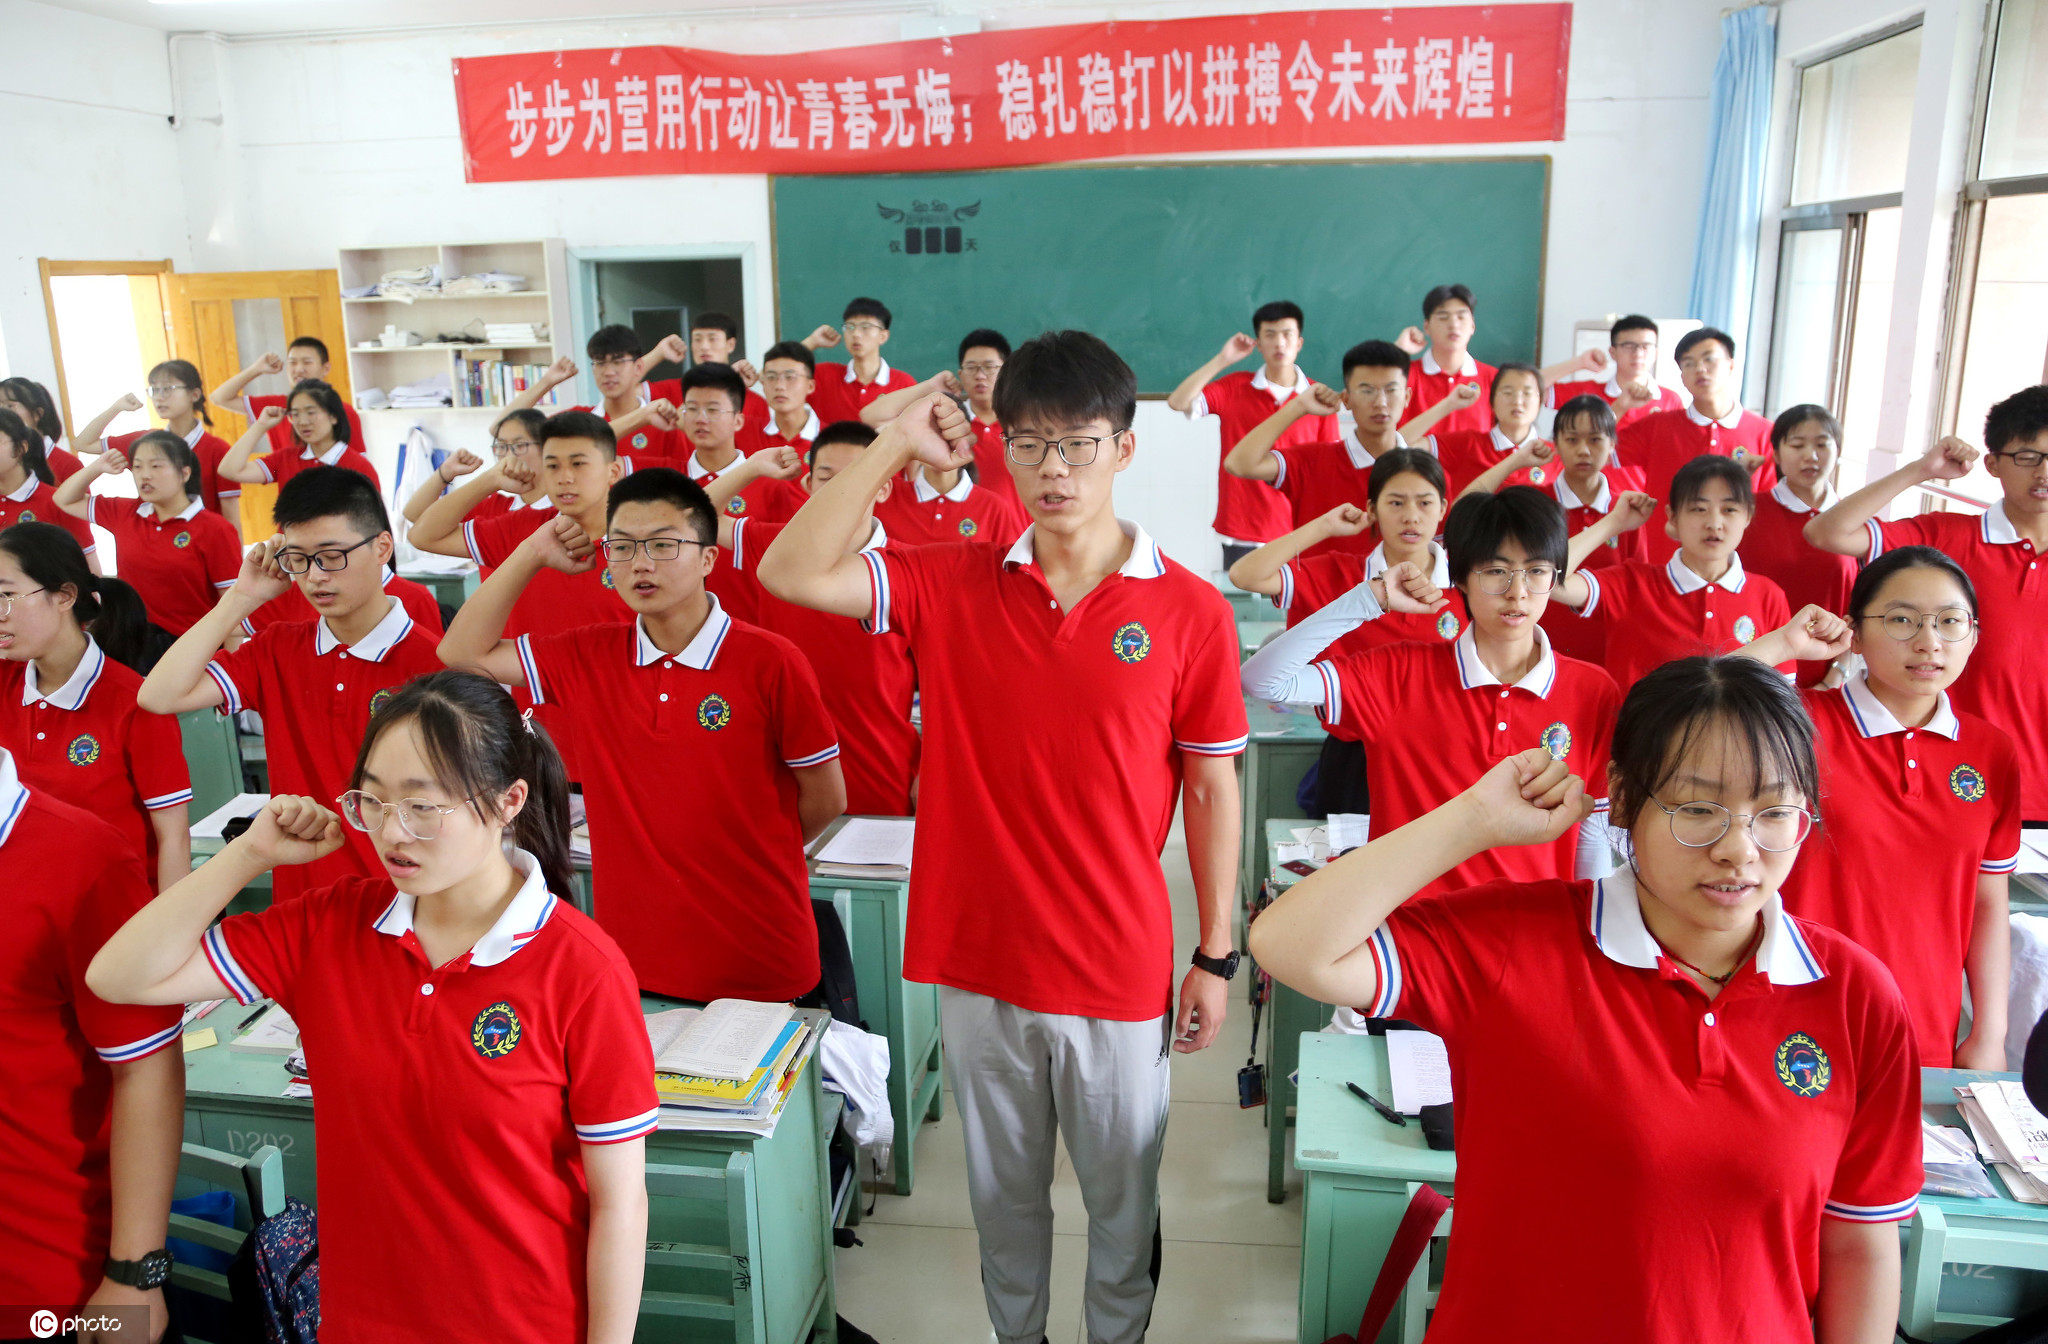 老师穿校服模拟学生在校北京启动全流程演练迎高三开学-高端教育网